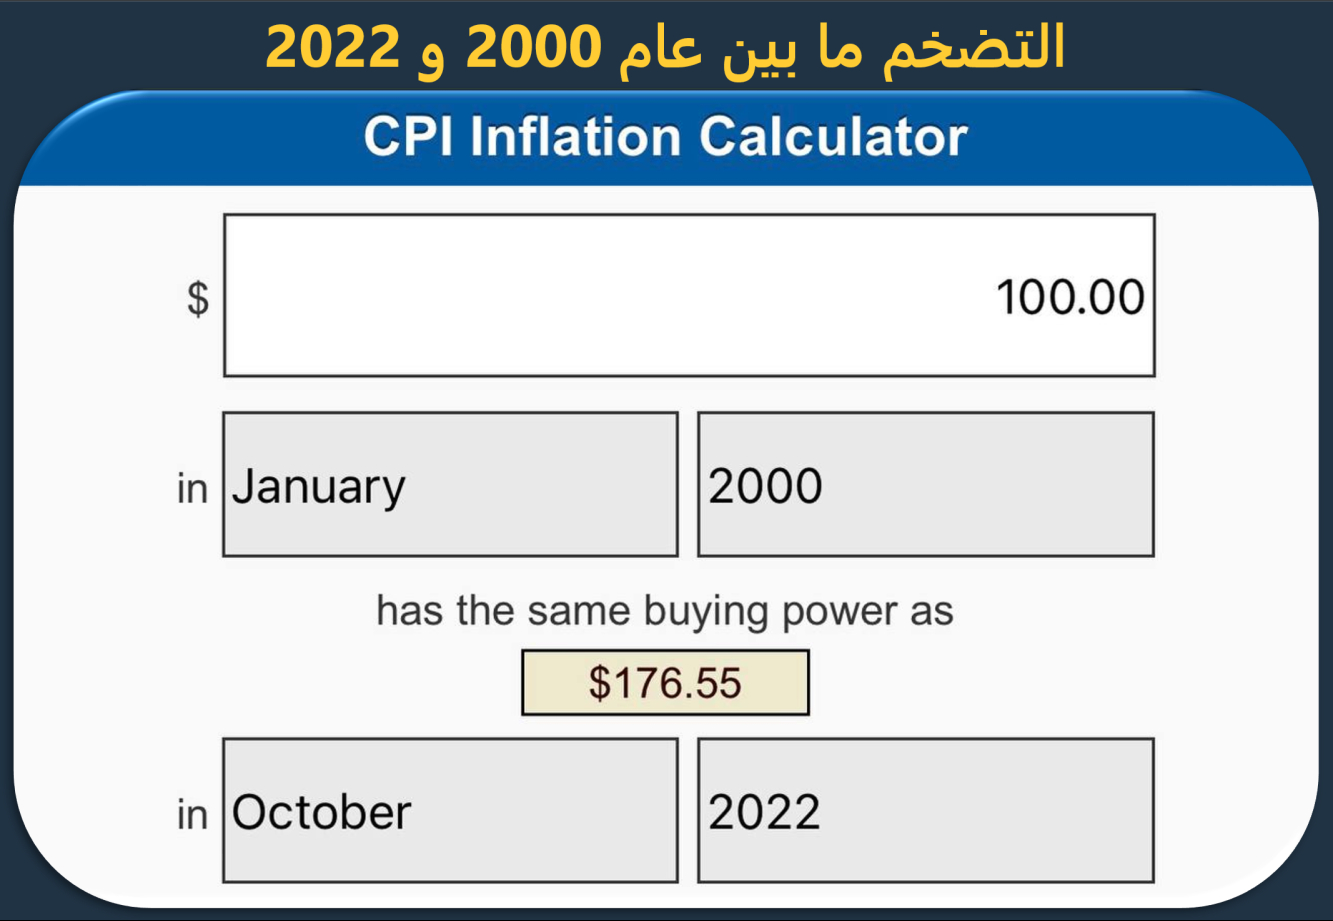 التضخم ما بين 2000 و 2022